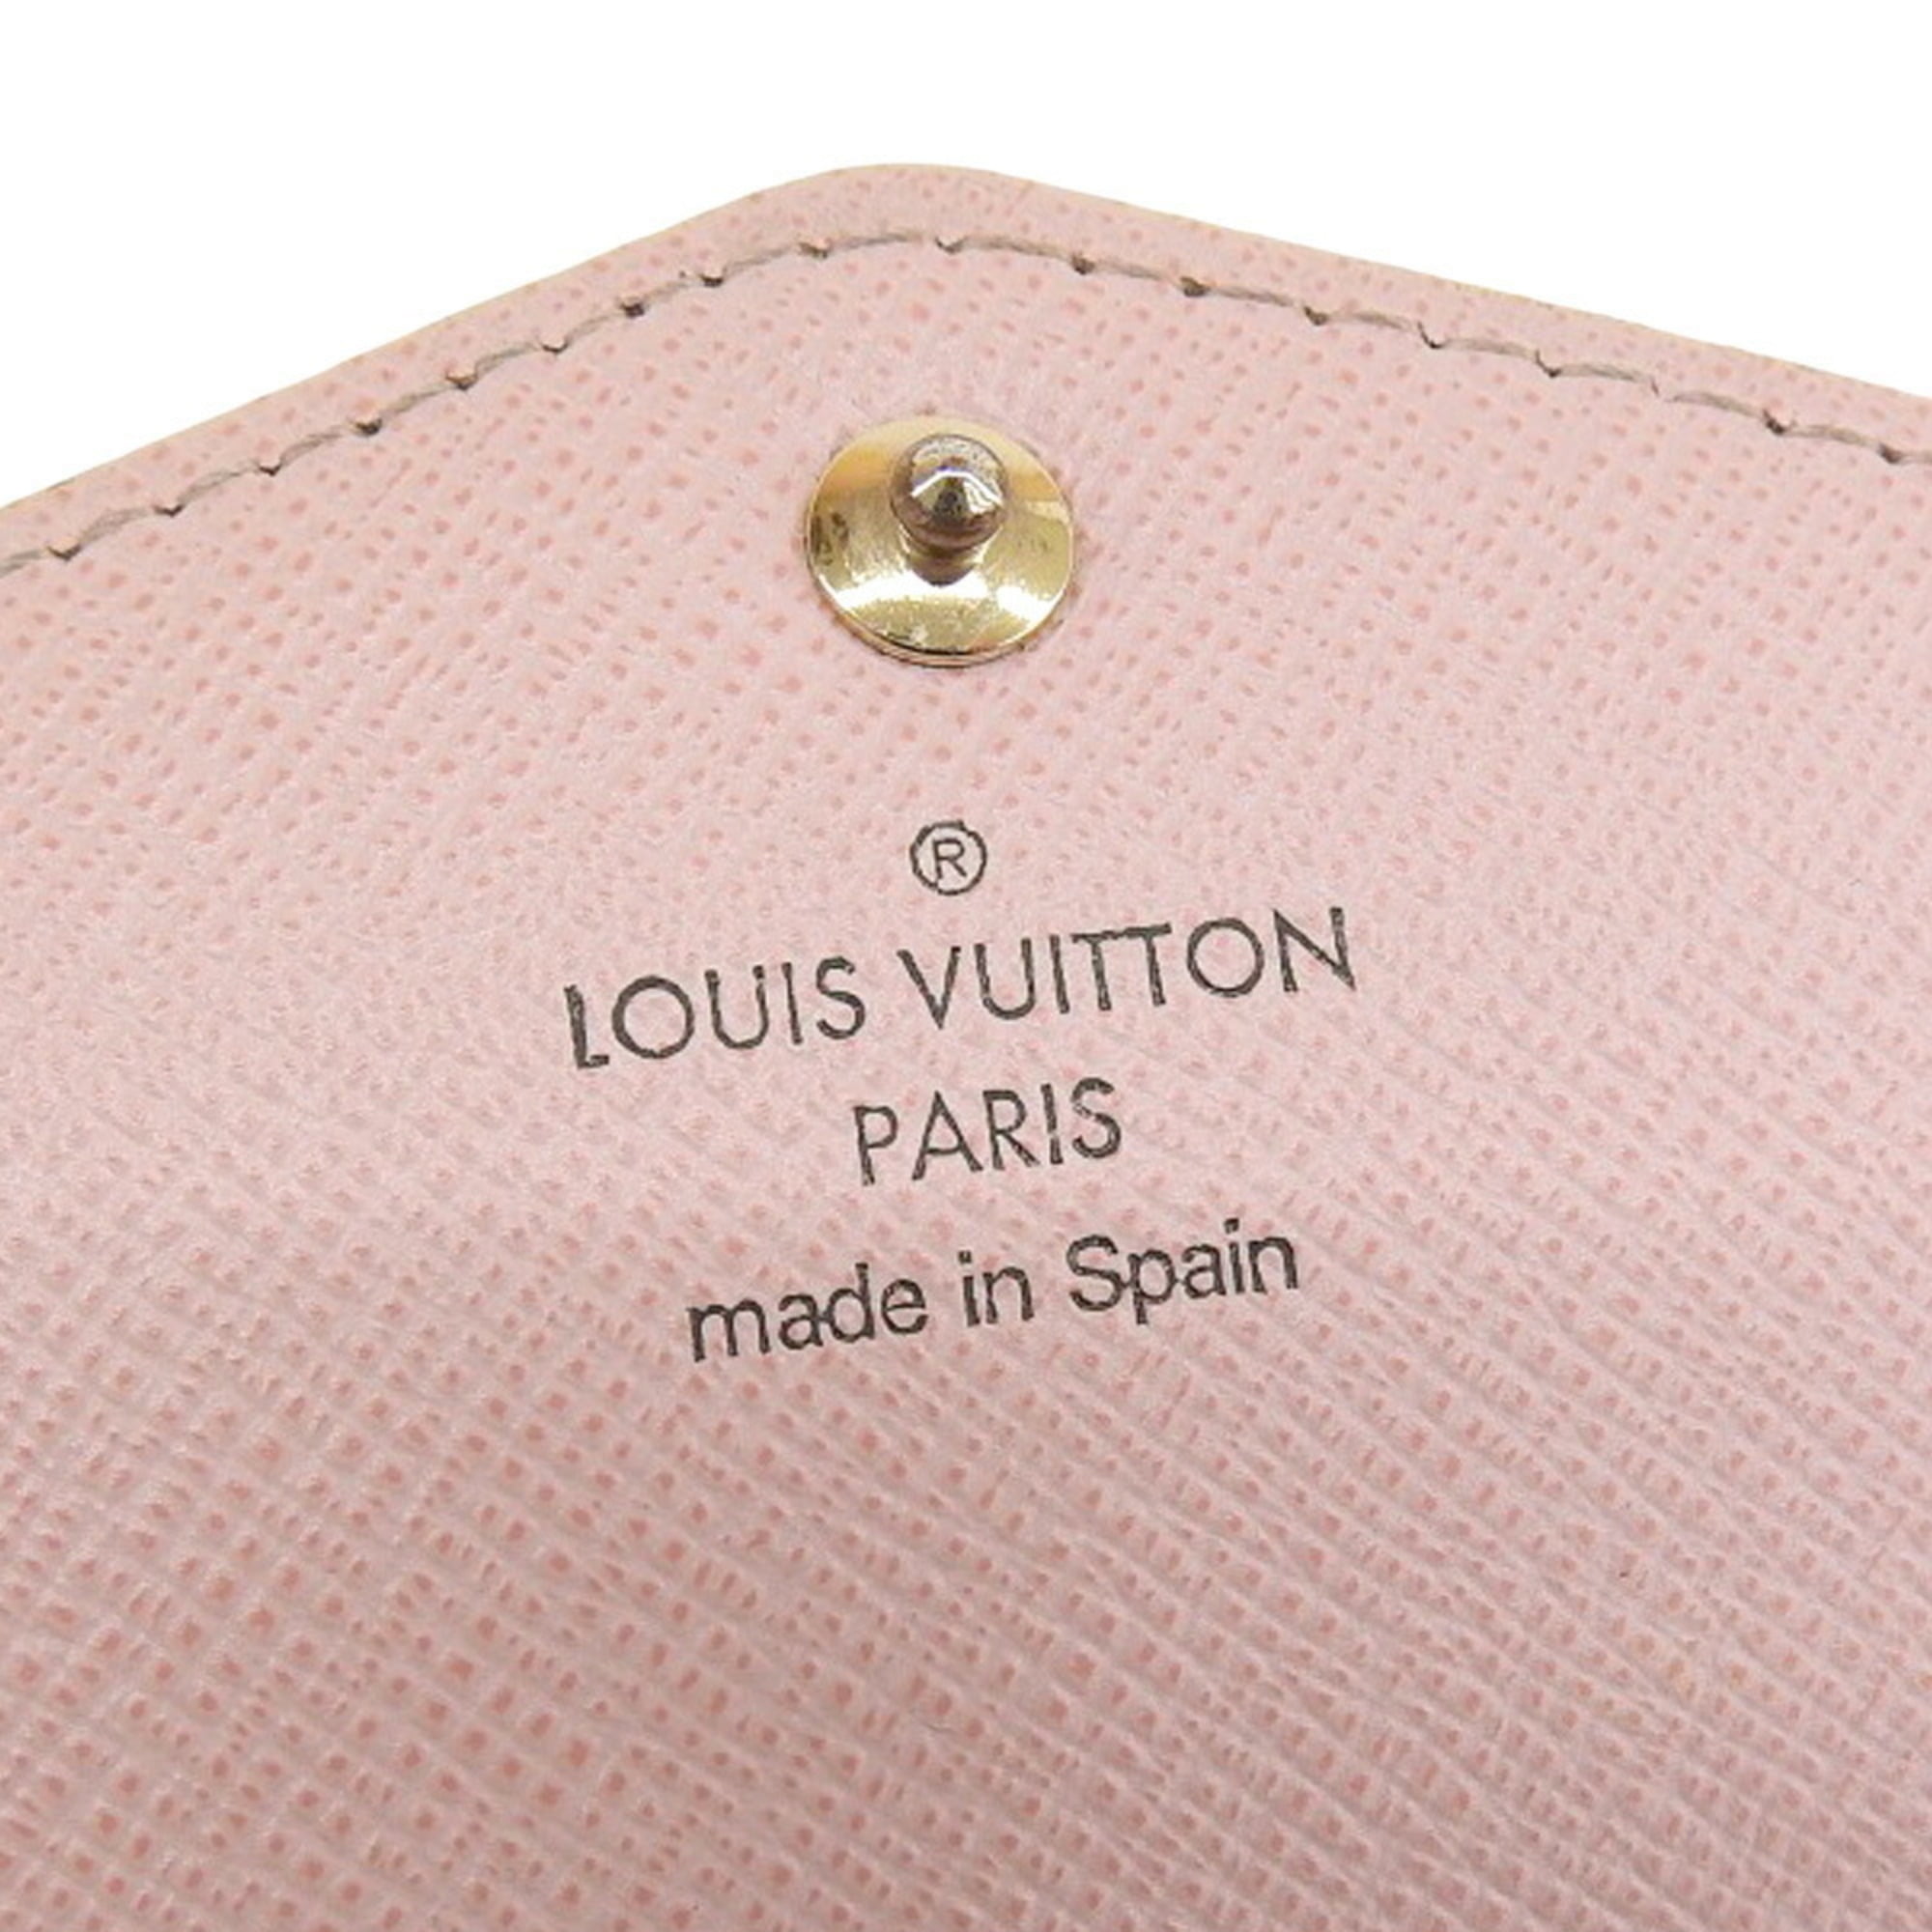 Authenticated used Louis Vuitton Louis Vuitton Monogram Portefeuille Sarah Pink Long Wallet Rose Ballerine M62235, Adult Unisex, Size: (HxWxD): 10.5cm